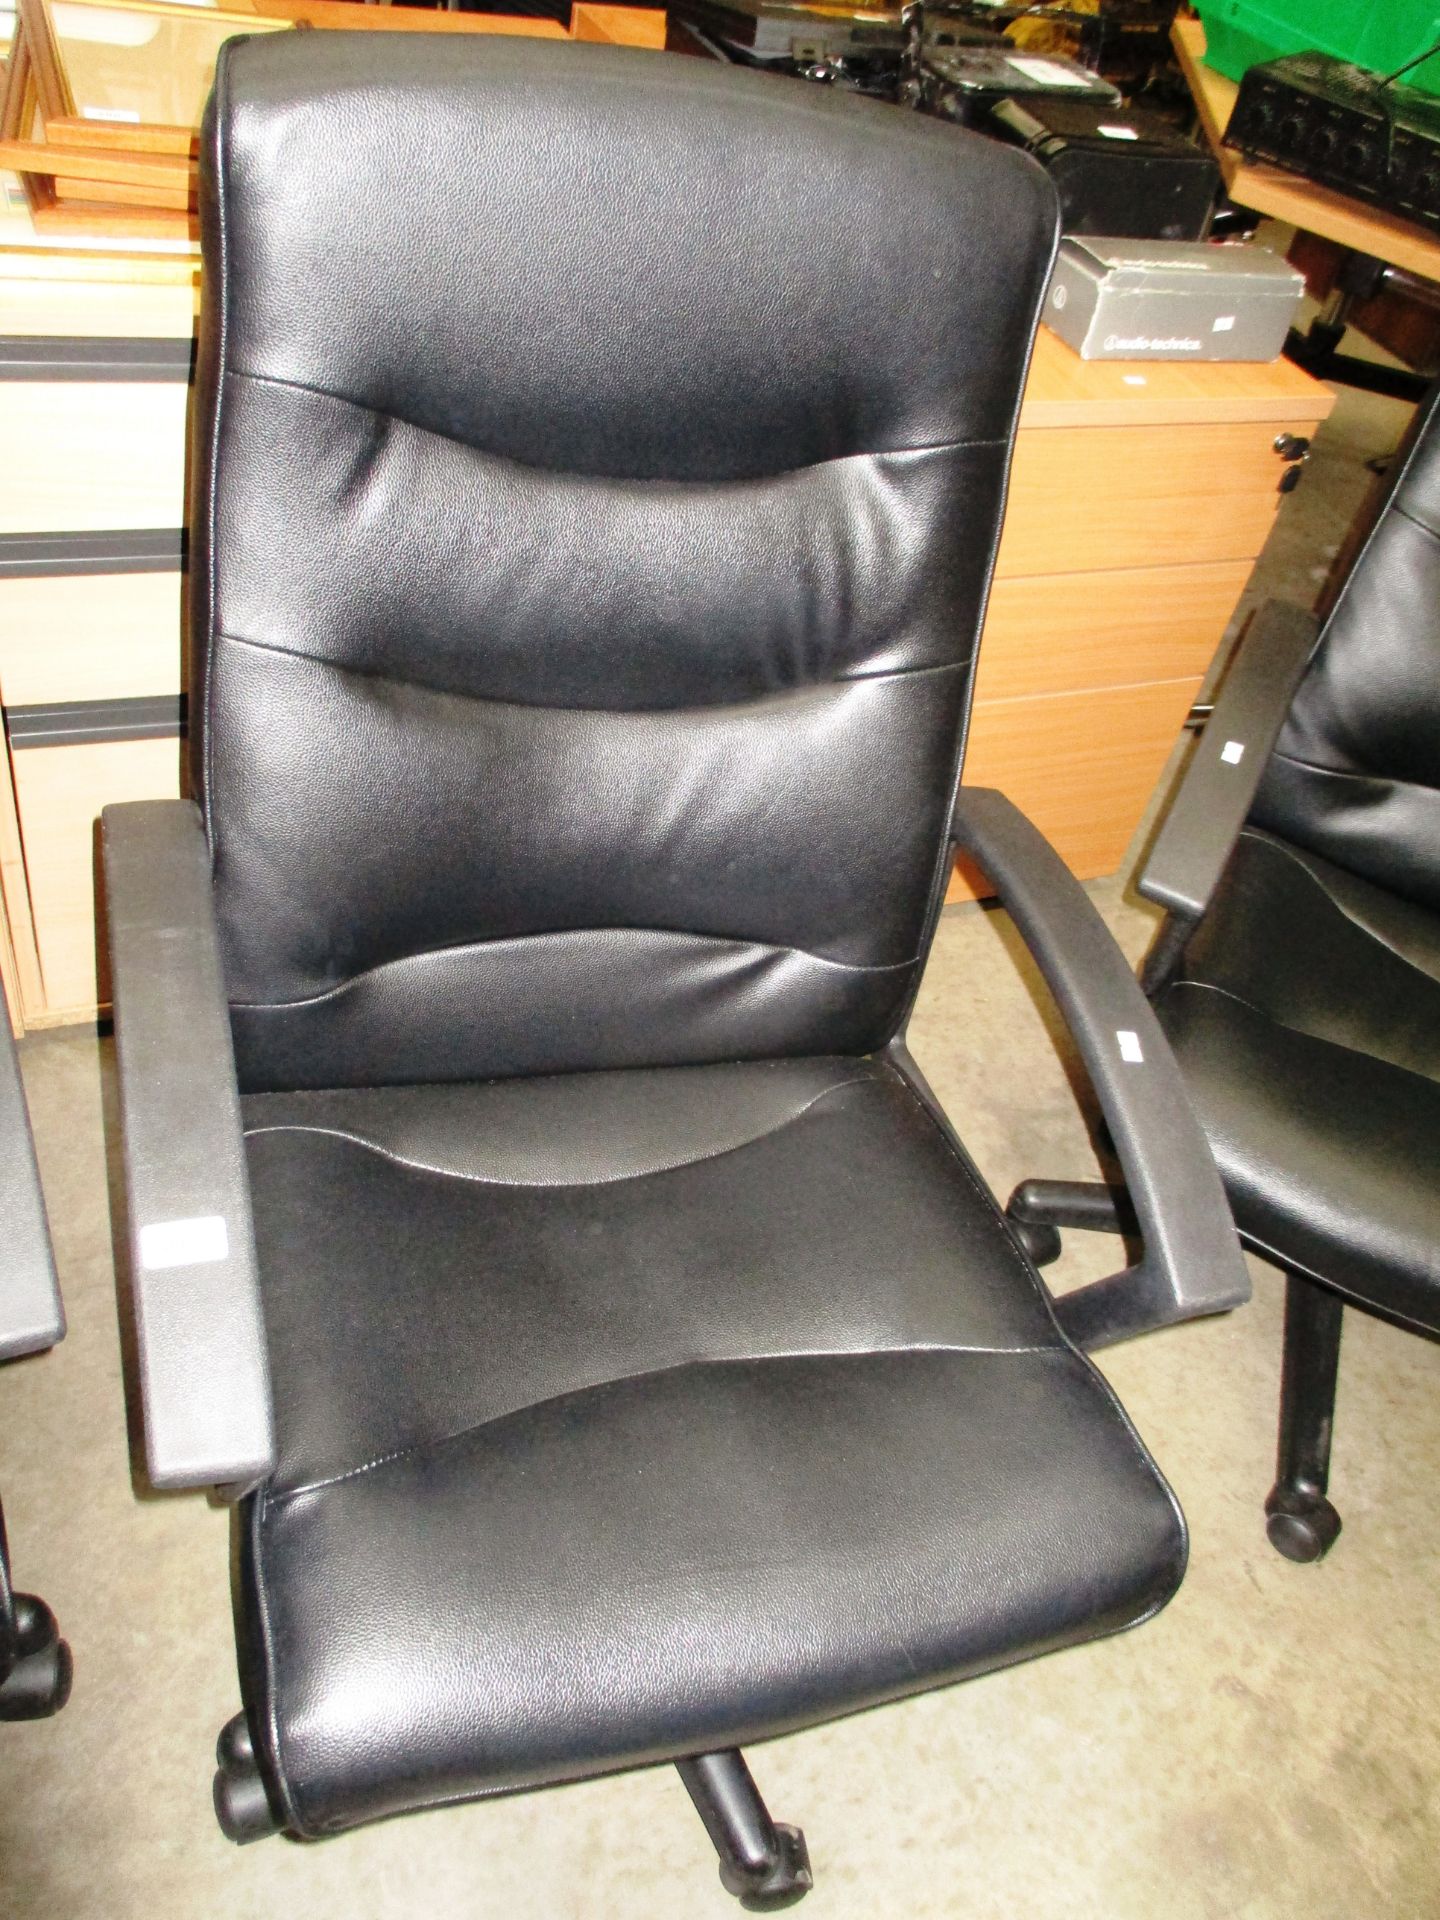 A black vinyl upholstered high back swivel armchair